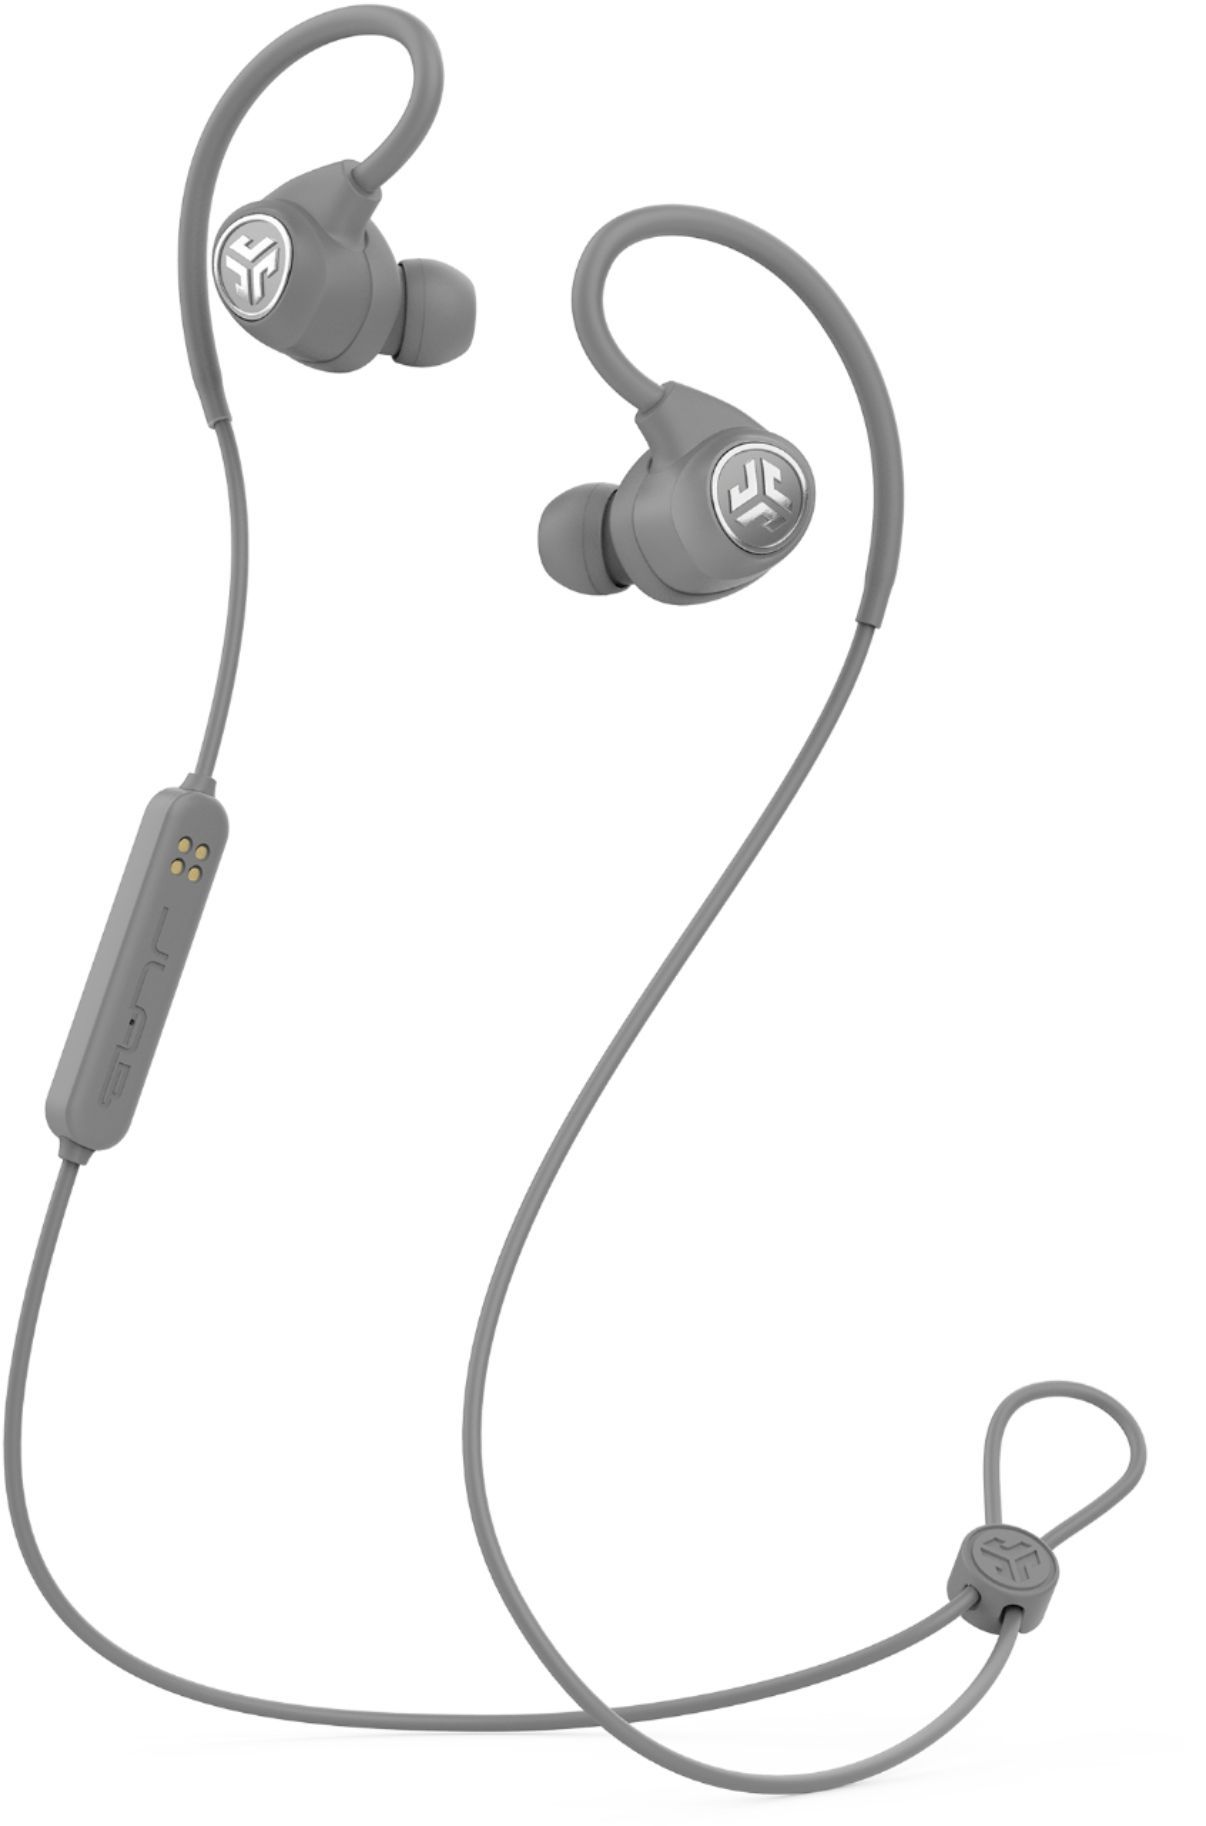 JLab Audio – Epic Sport Wireless In-Ear Headphones -$35.99(64% Off)